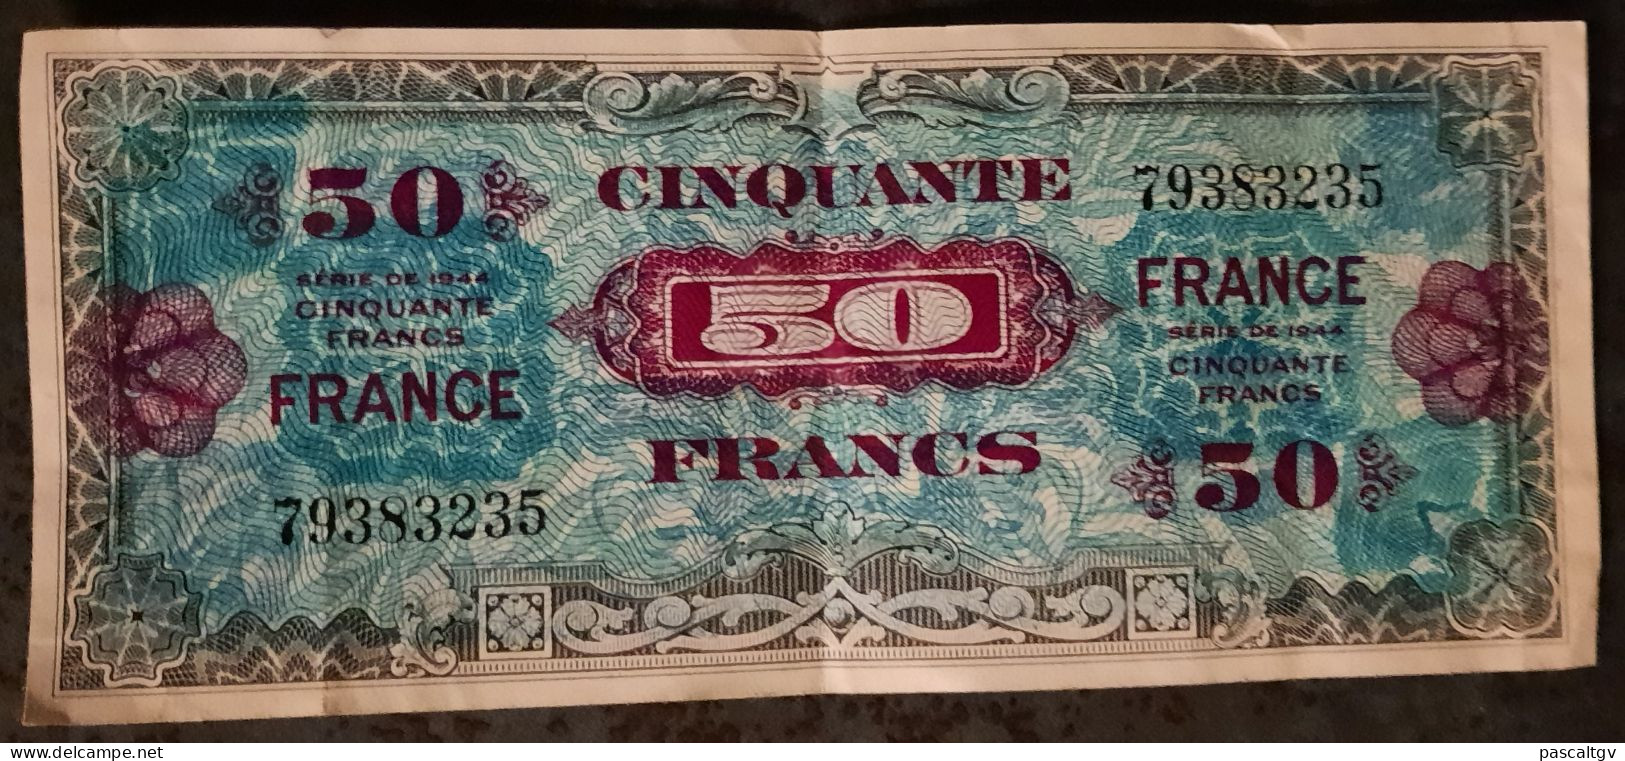 50 FRANCS - ** VERSO FRANCE - SERIE DE 1944 - N° 79383235 - Billet Du Débarquement ** - 1945 Verso Frankreich